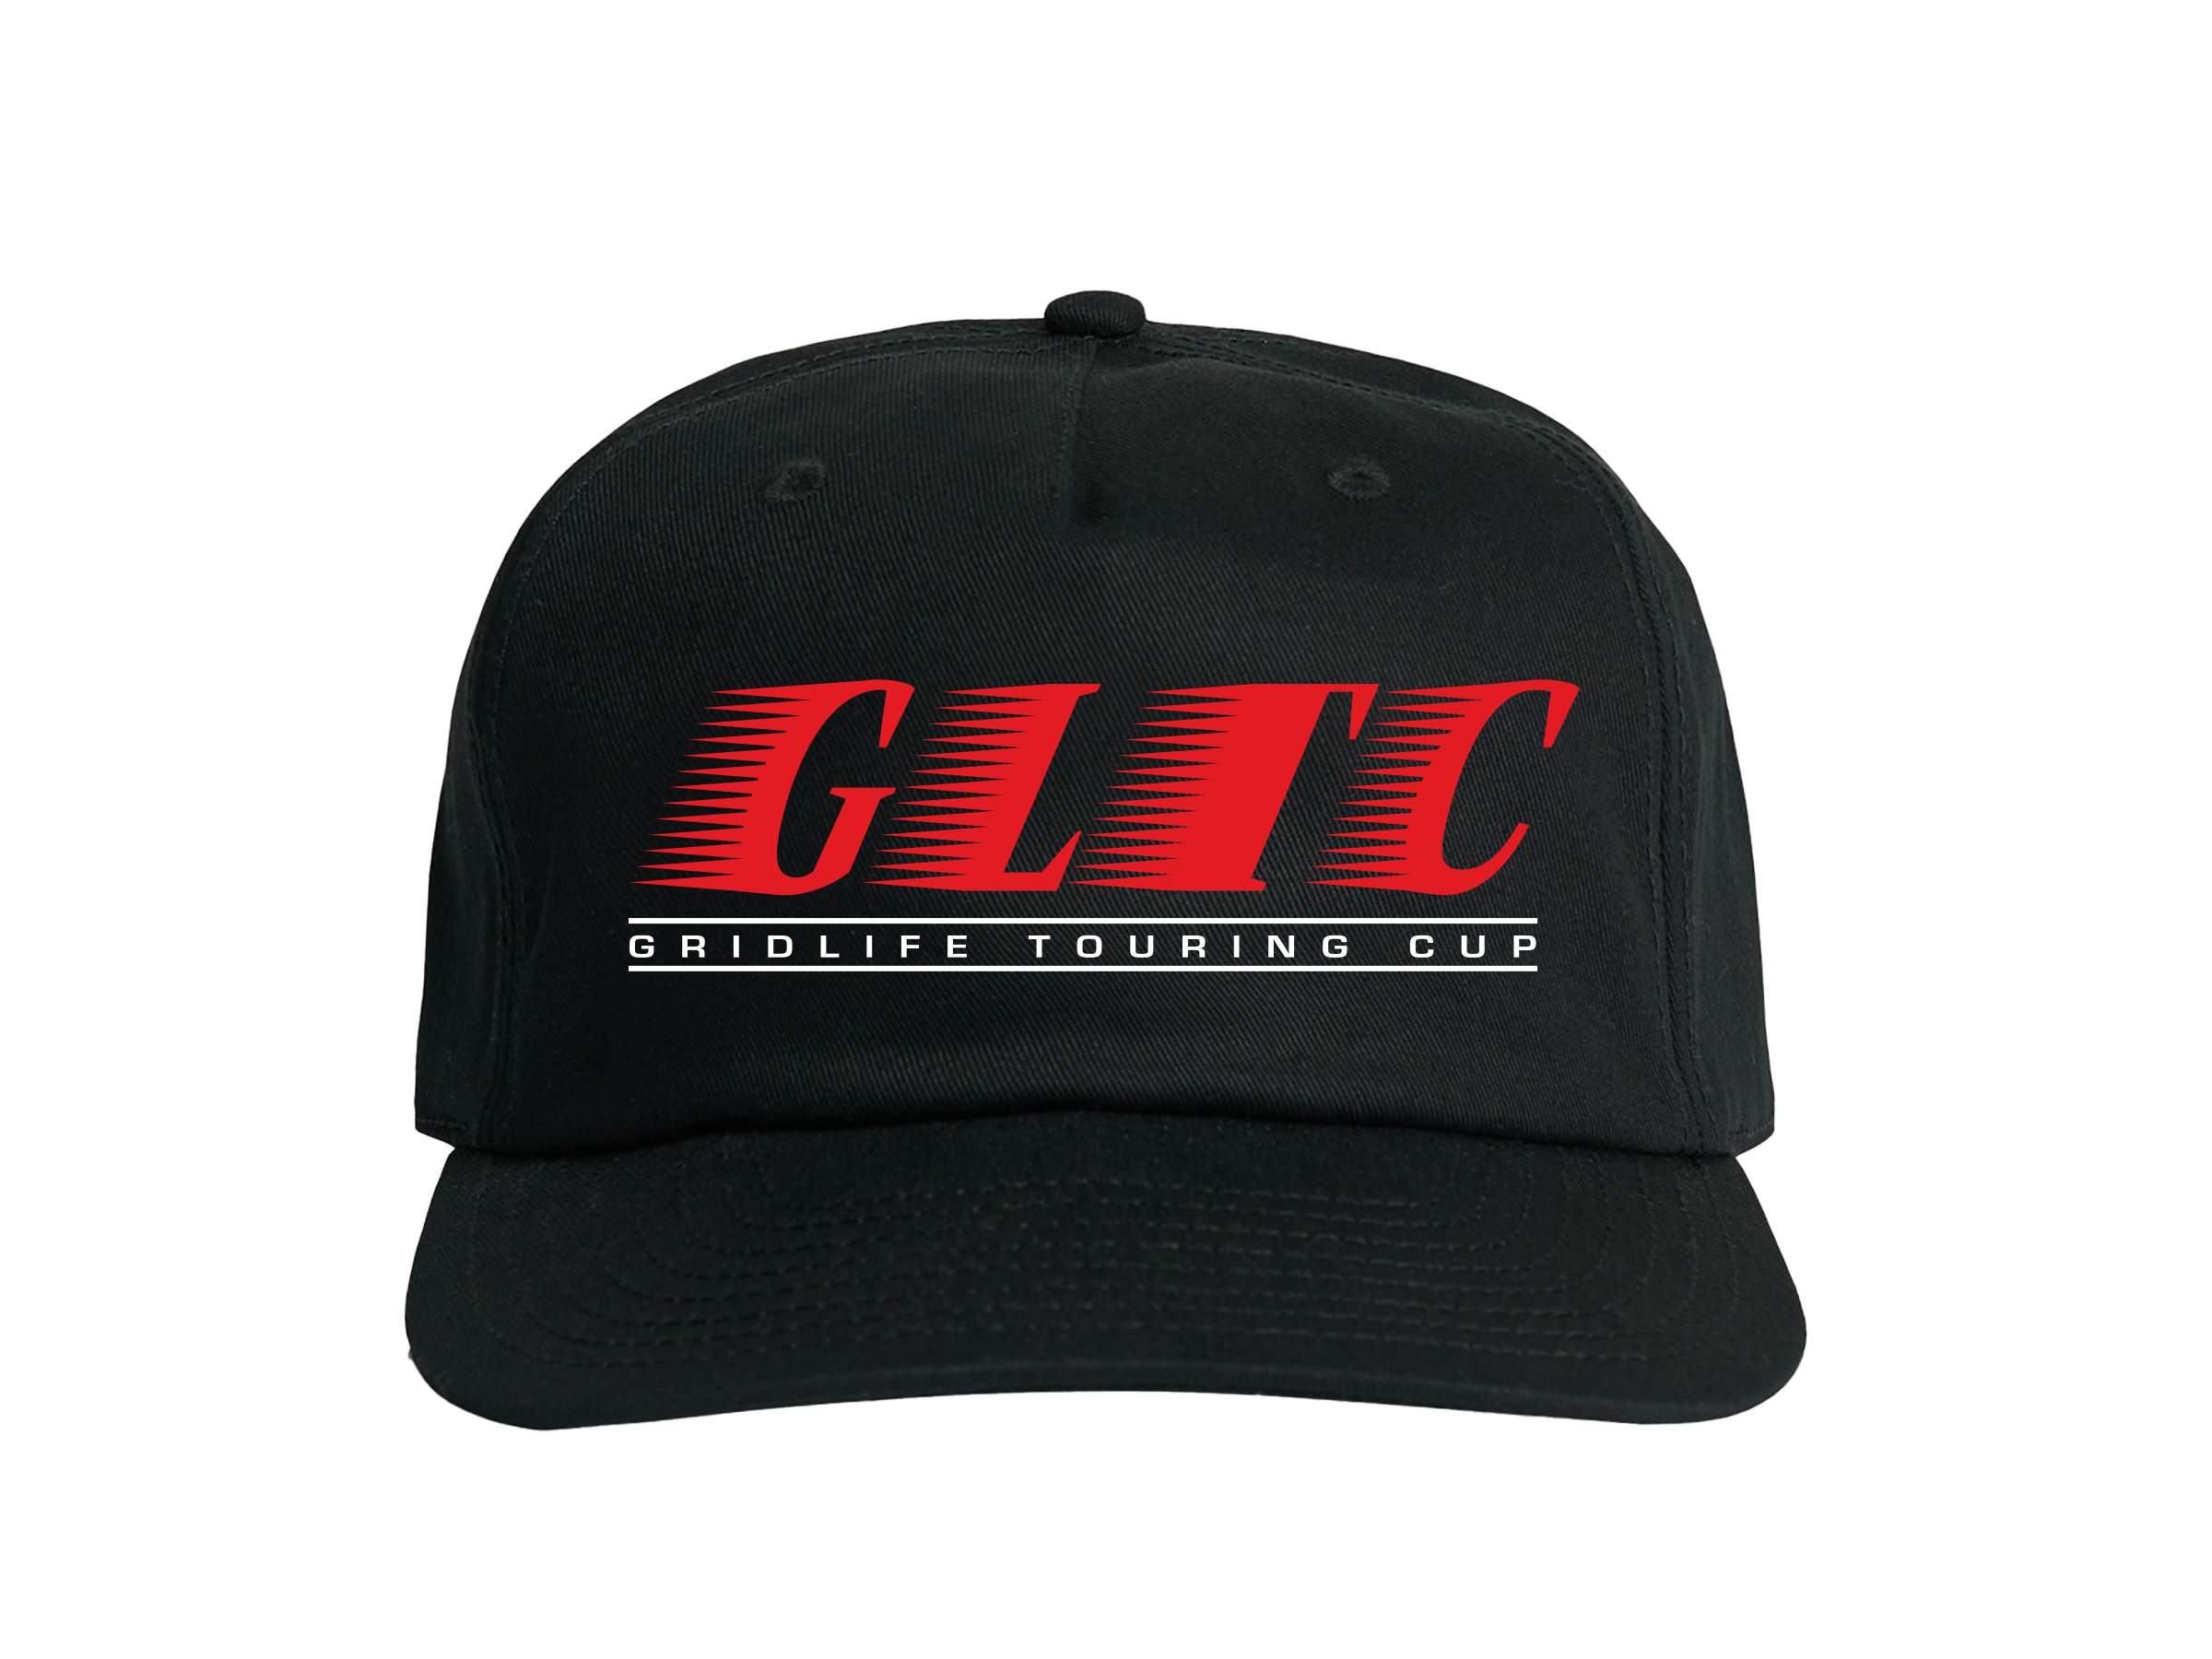 GLTC 5 panel hat